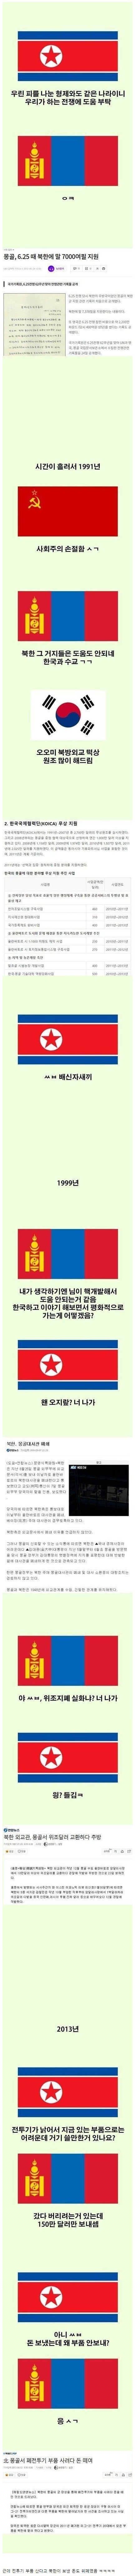 몽골이 북한 담당 일진인 이유